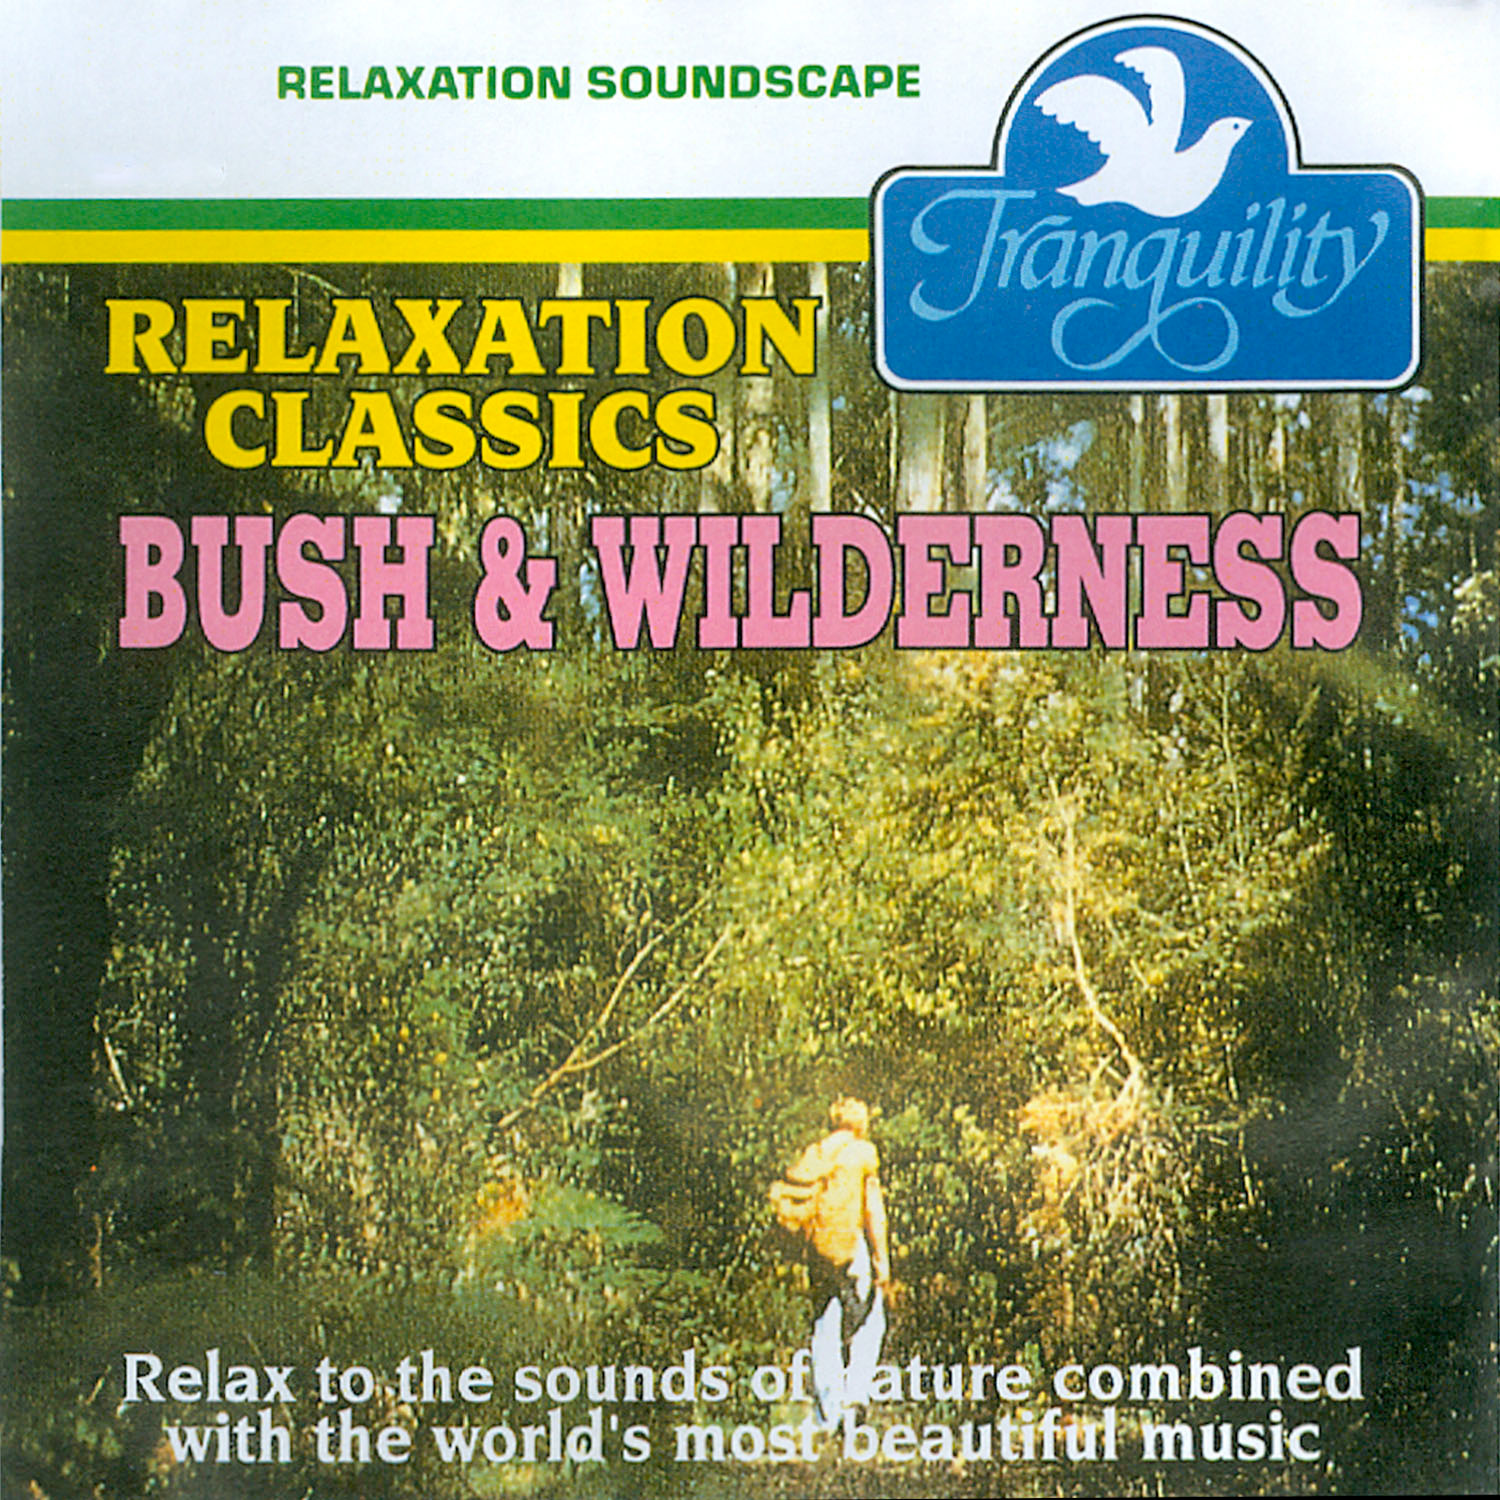 Bush & Wilderness